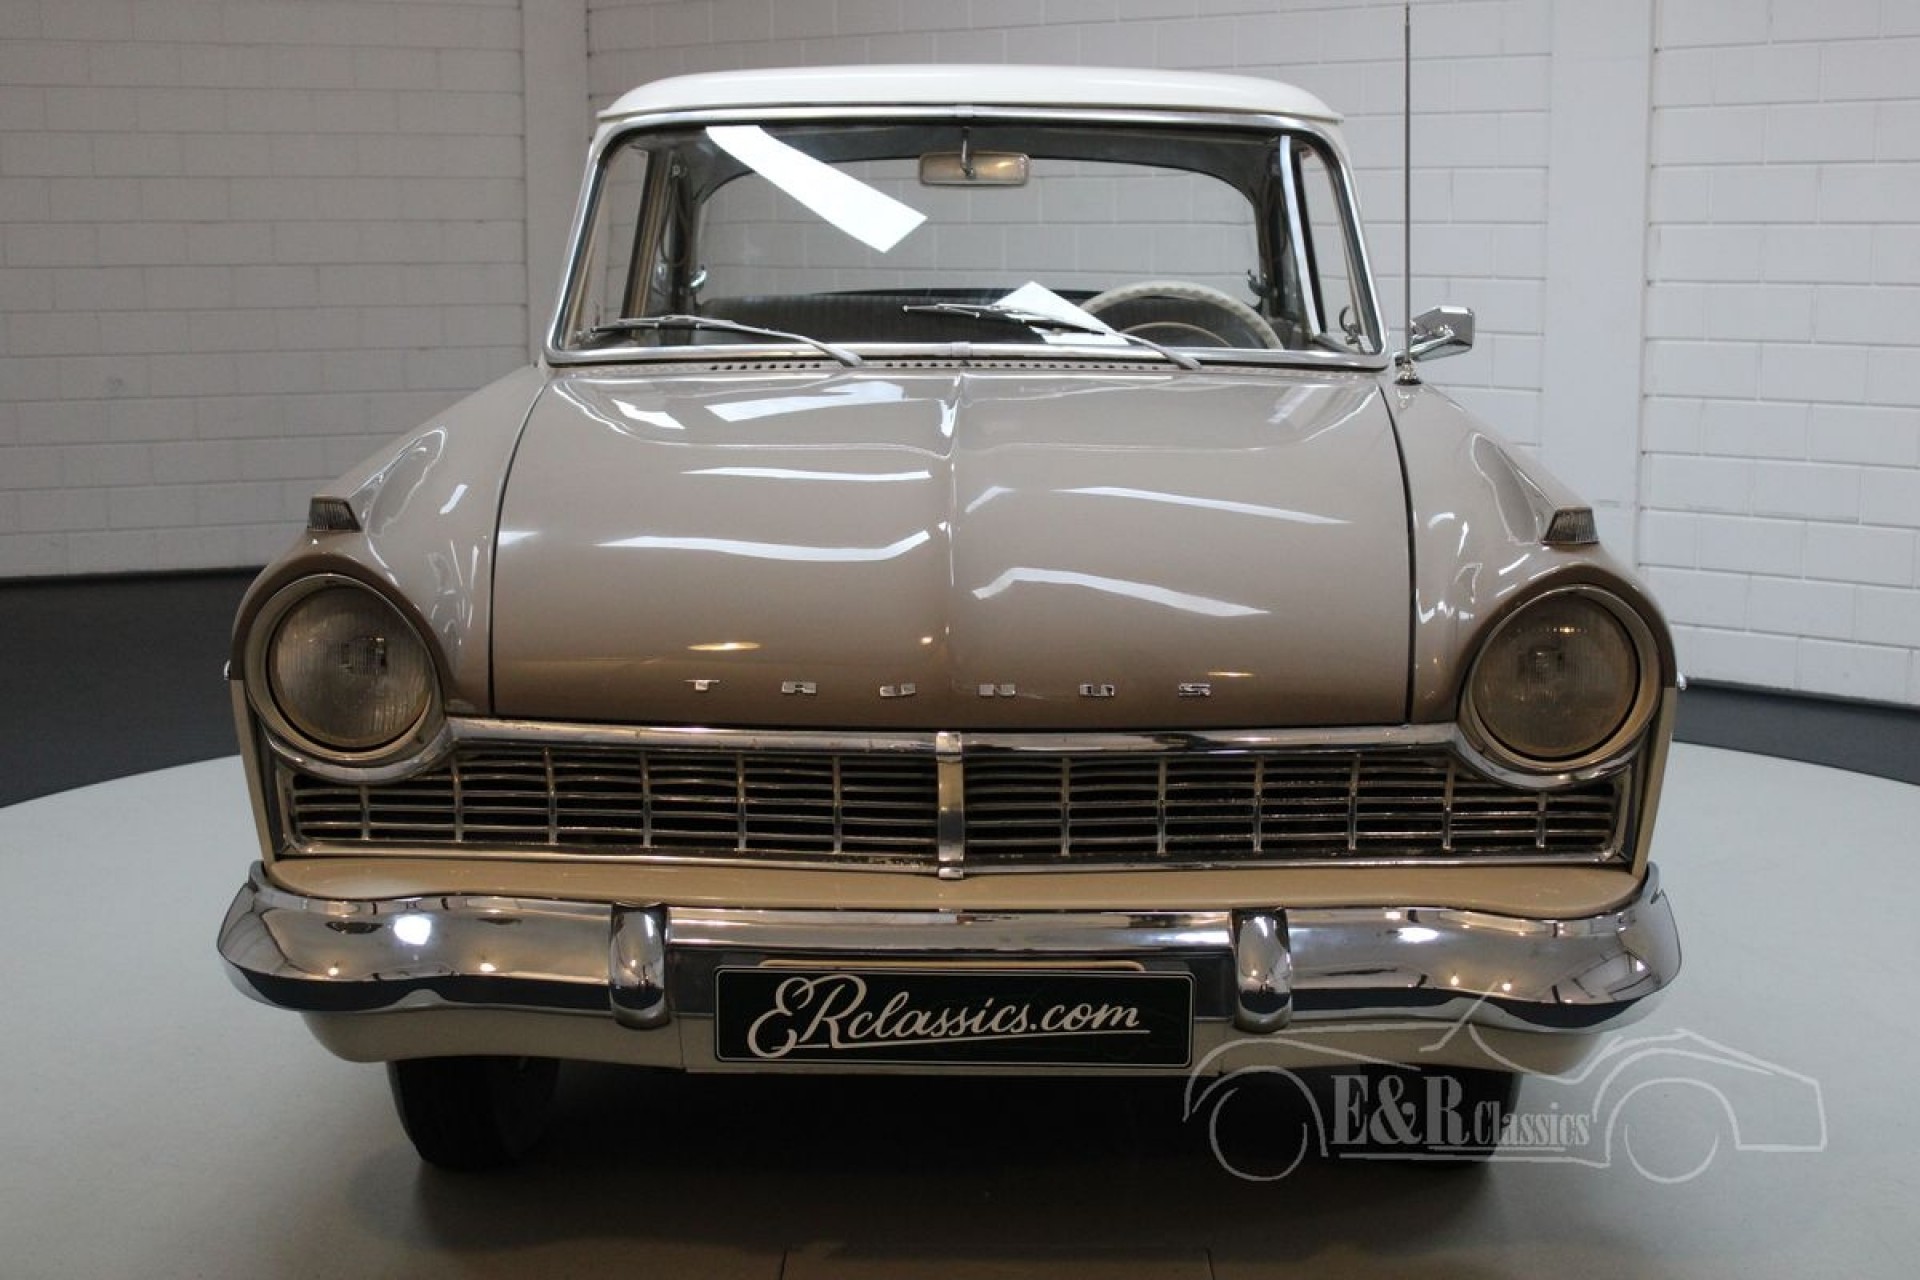 Ford Taunus 17M obnovený v roku 1960 na predaj v